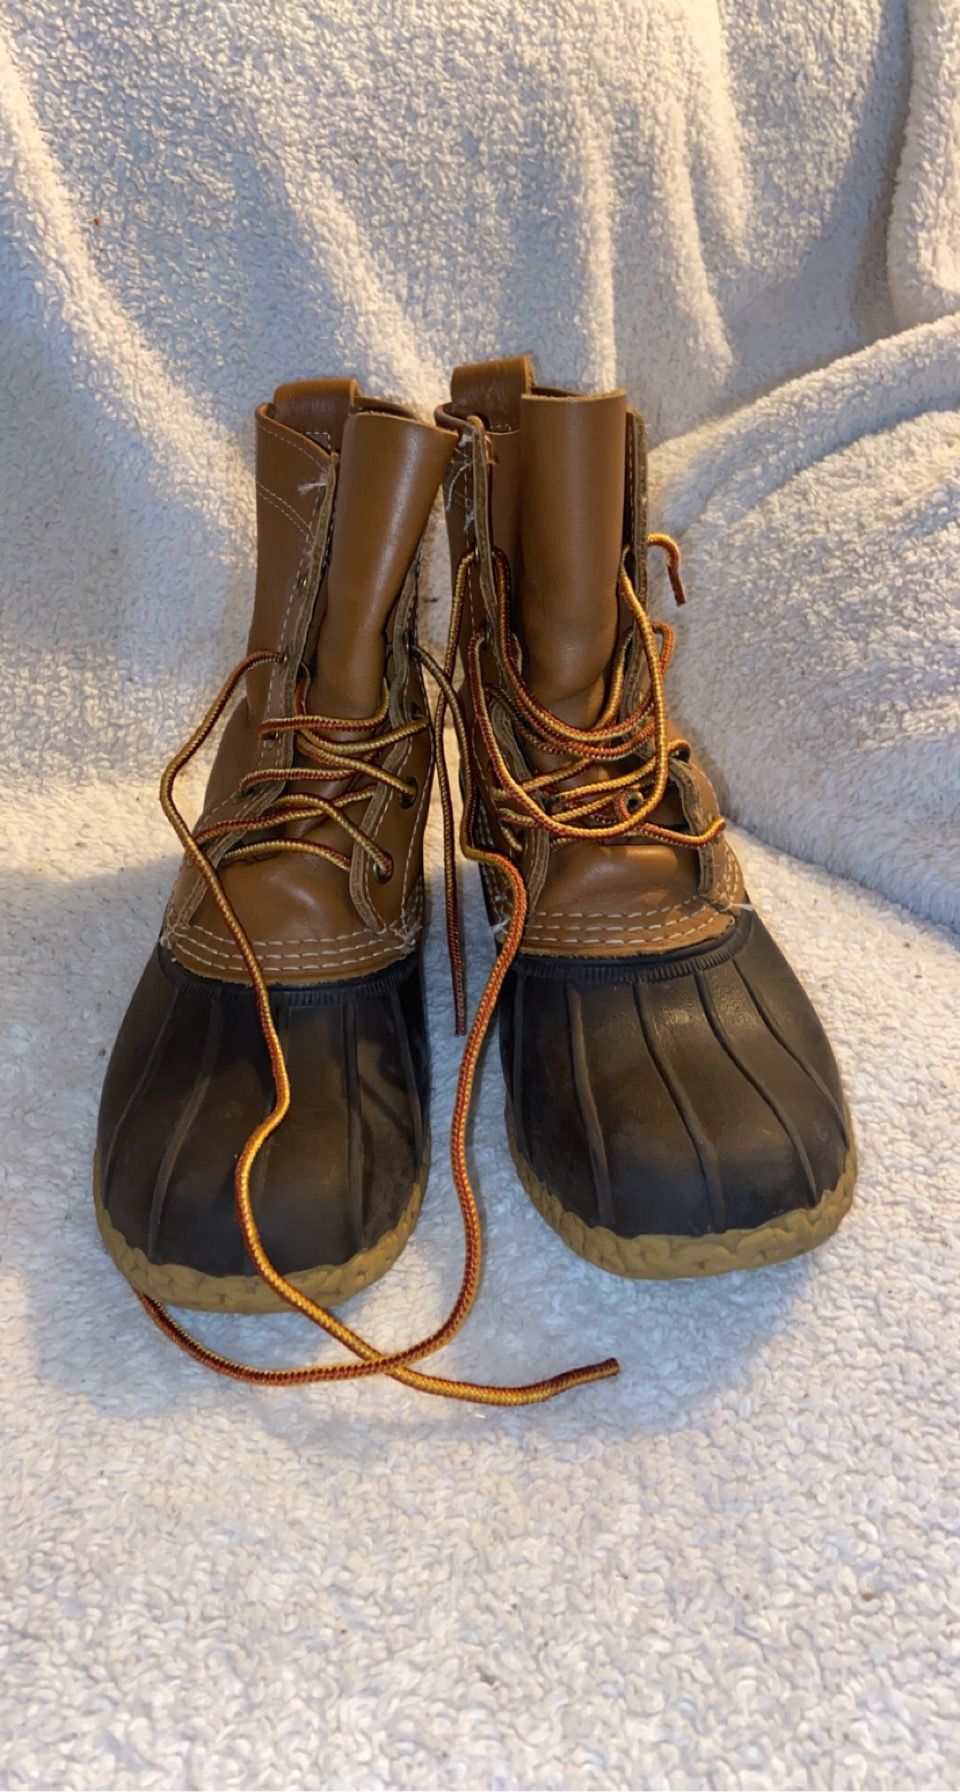 L.L Bean boots 